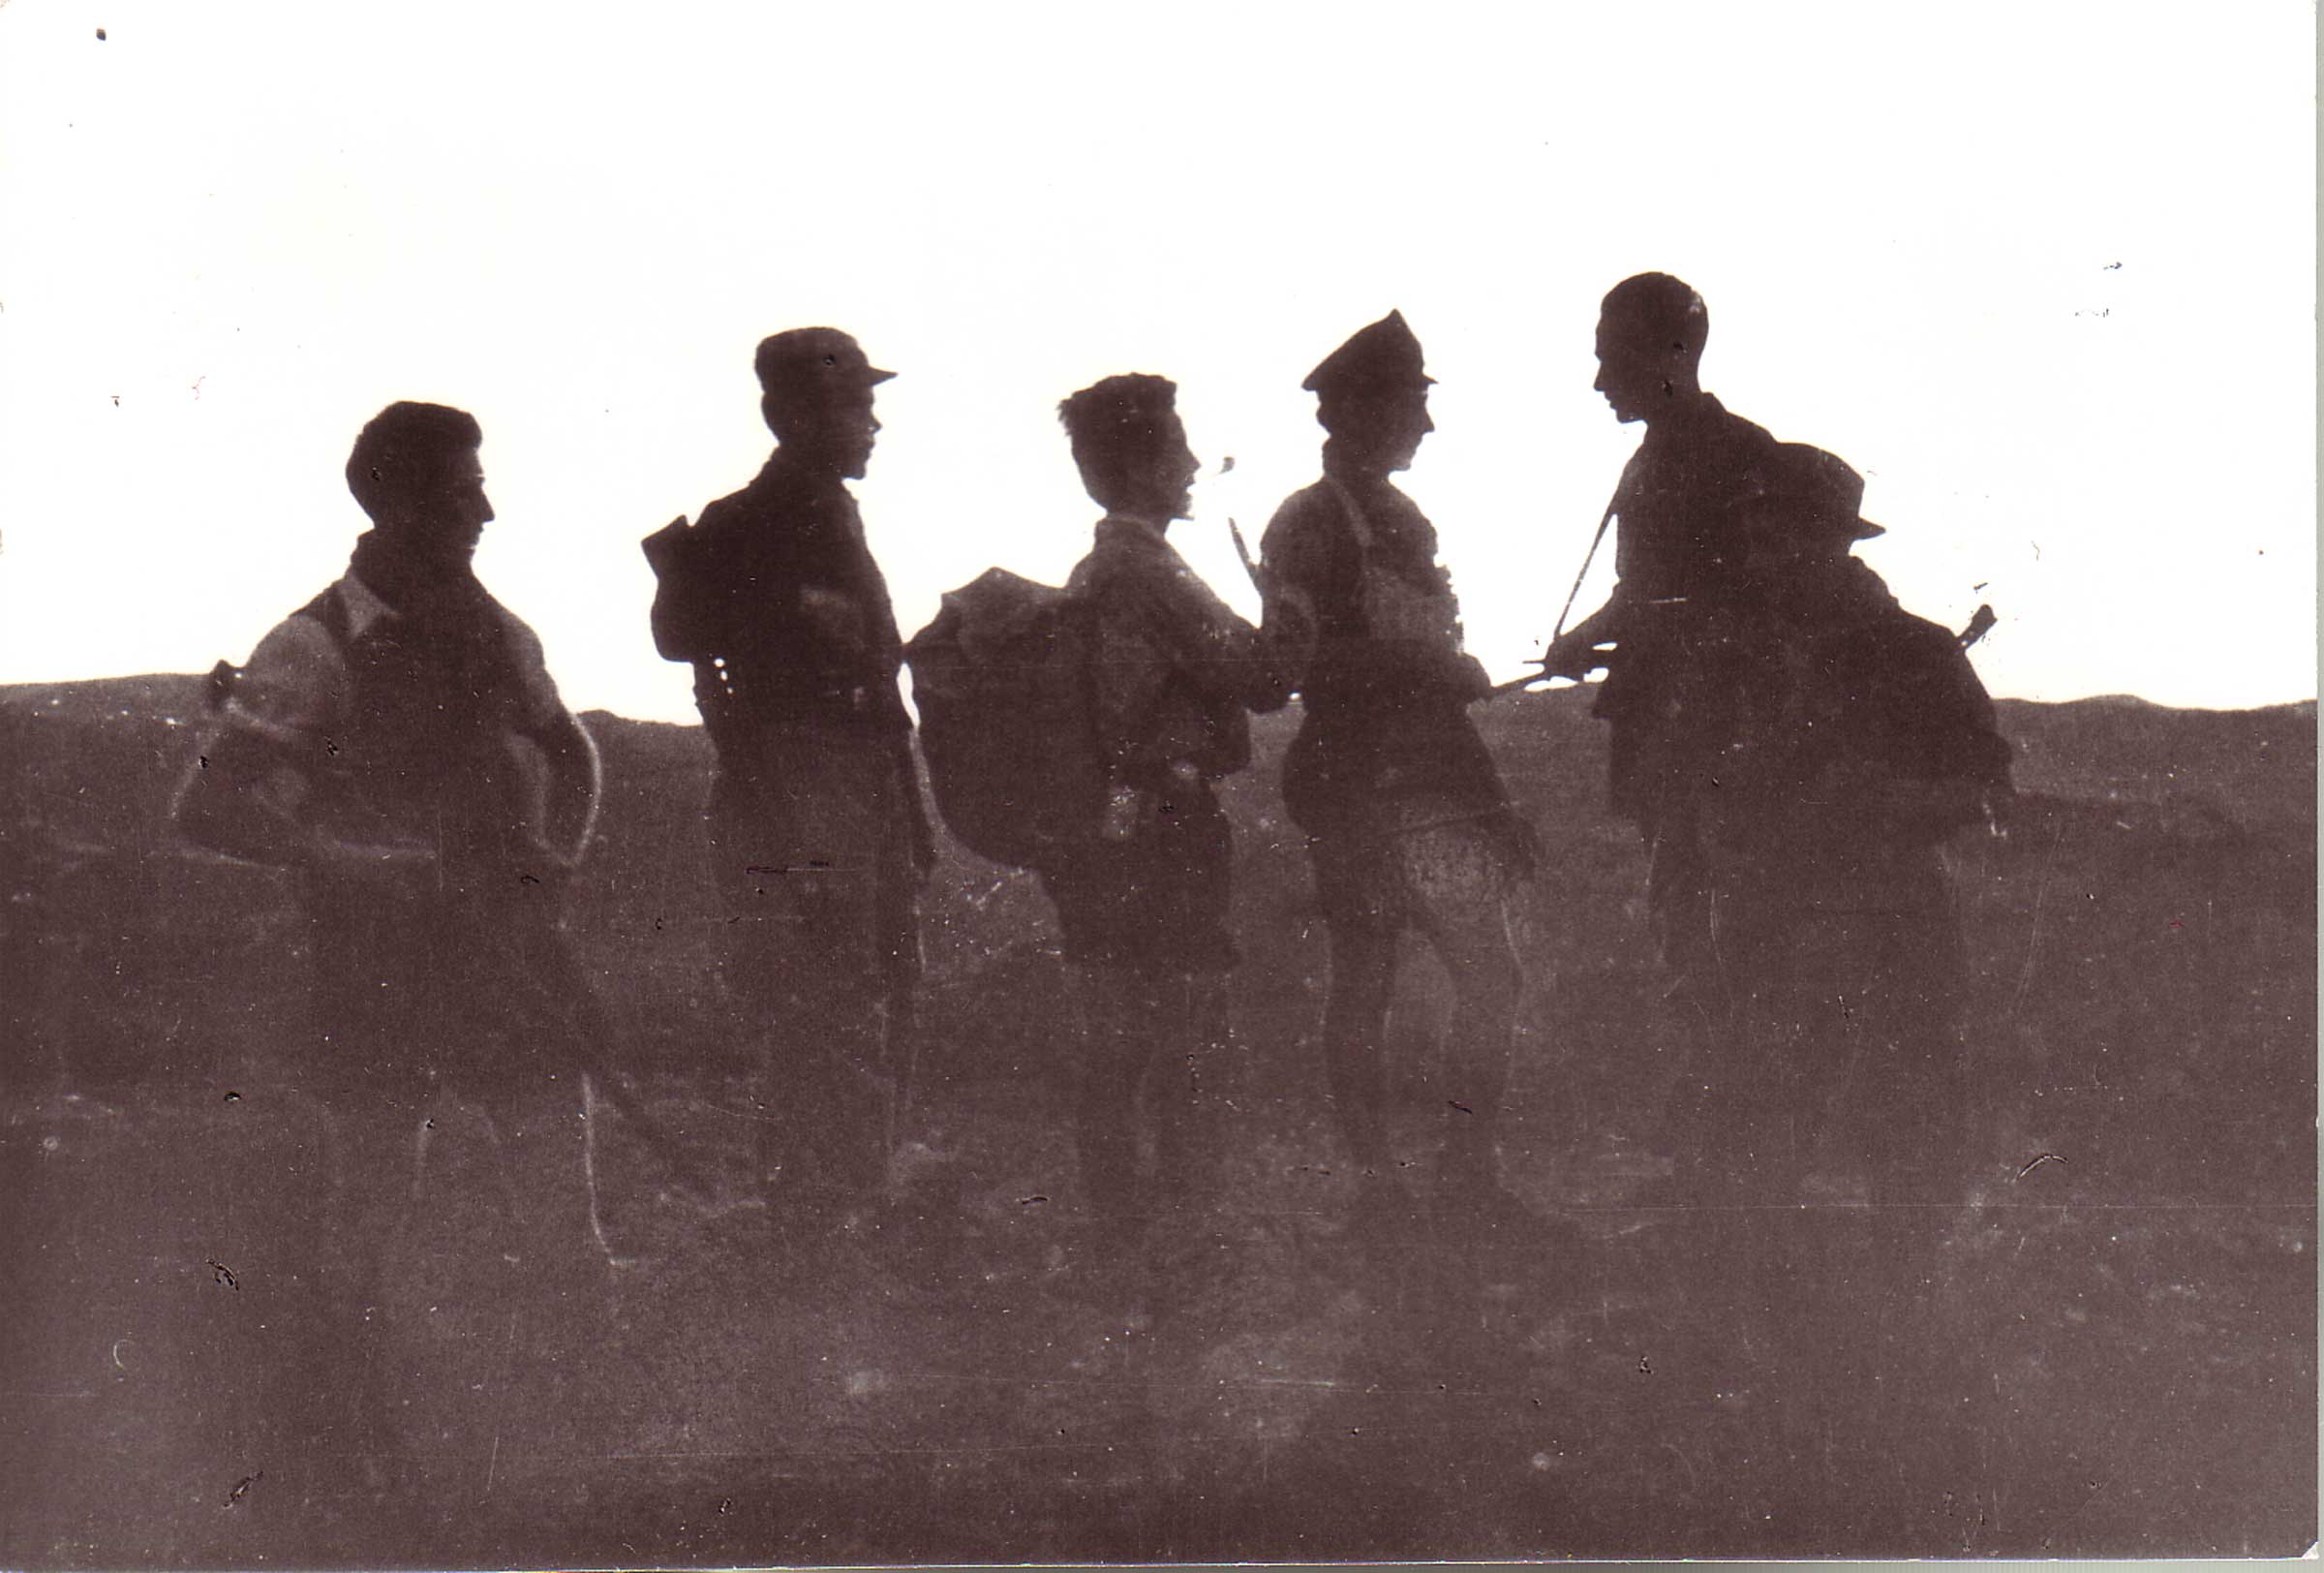 Pattuglia della 36ª Brigata Garibaldi in partenza per una missione nella zona di Monte Pianaccino nel luglio del 1944: da sinistra Tolmino Fornasari, Diritto Diolaiti, “Bartierino”, “Loredana”, Sergio Bonarelli, “Lupo” di San Lazzaro